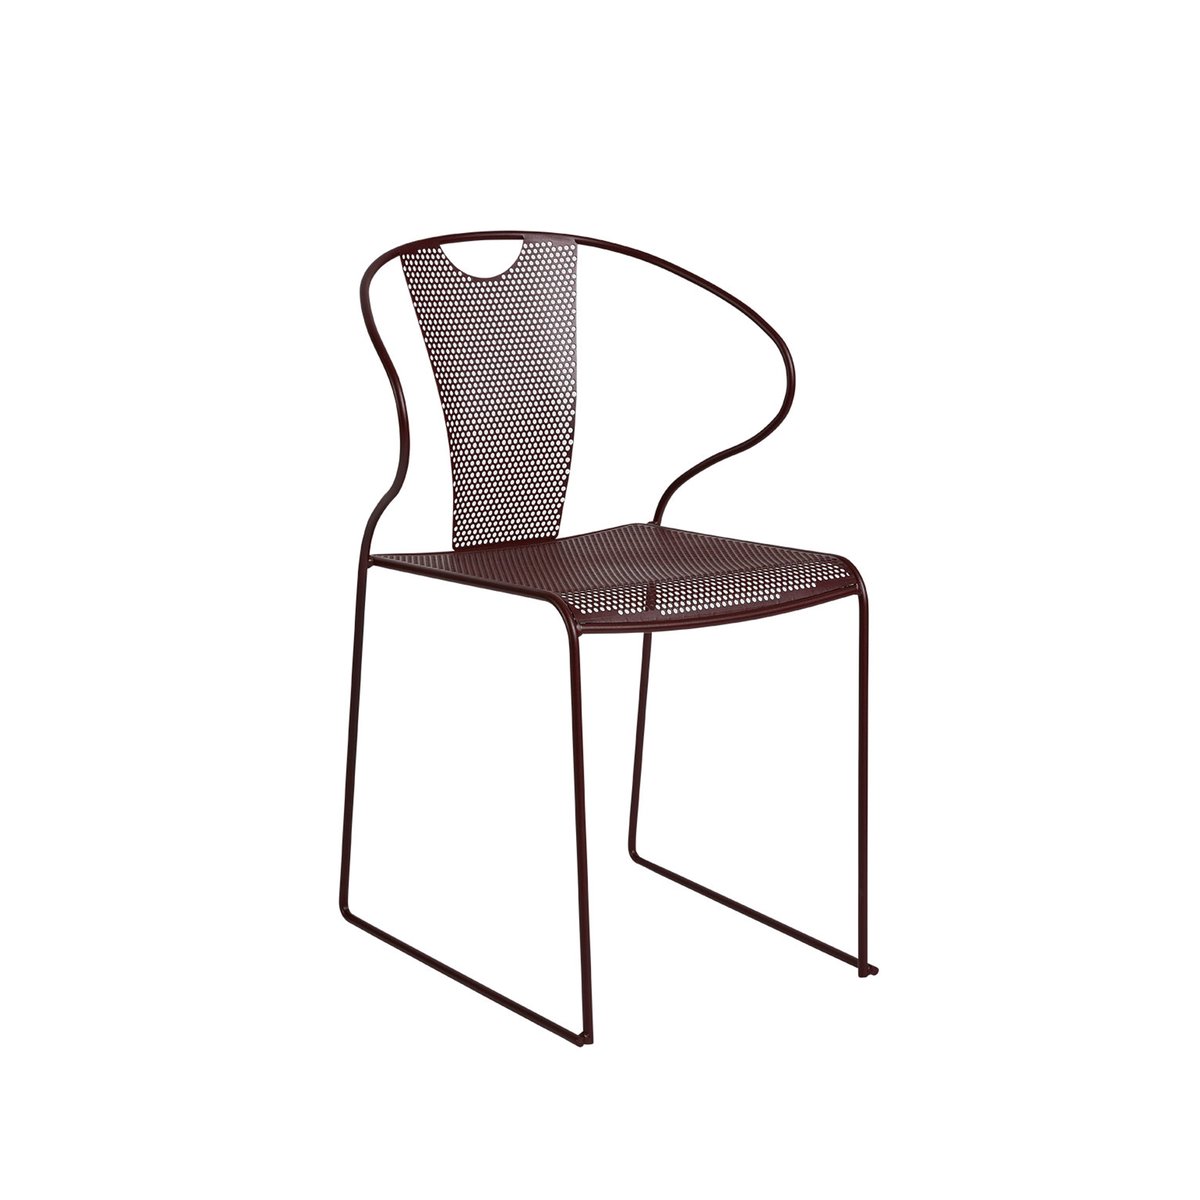 SMD Design Piazza stoel met armleuningen bordeaux